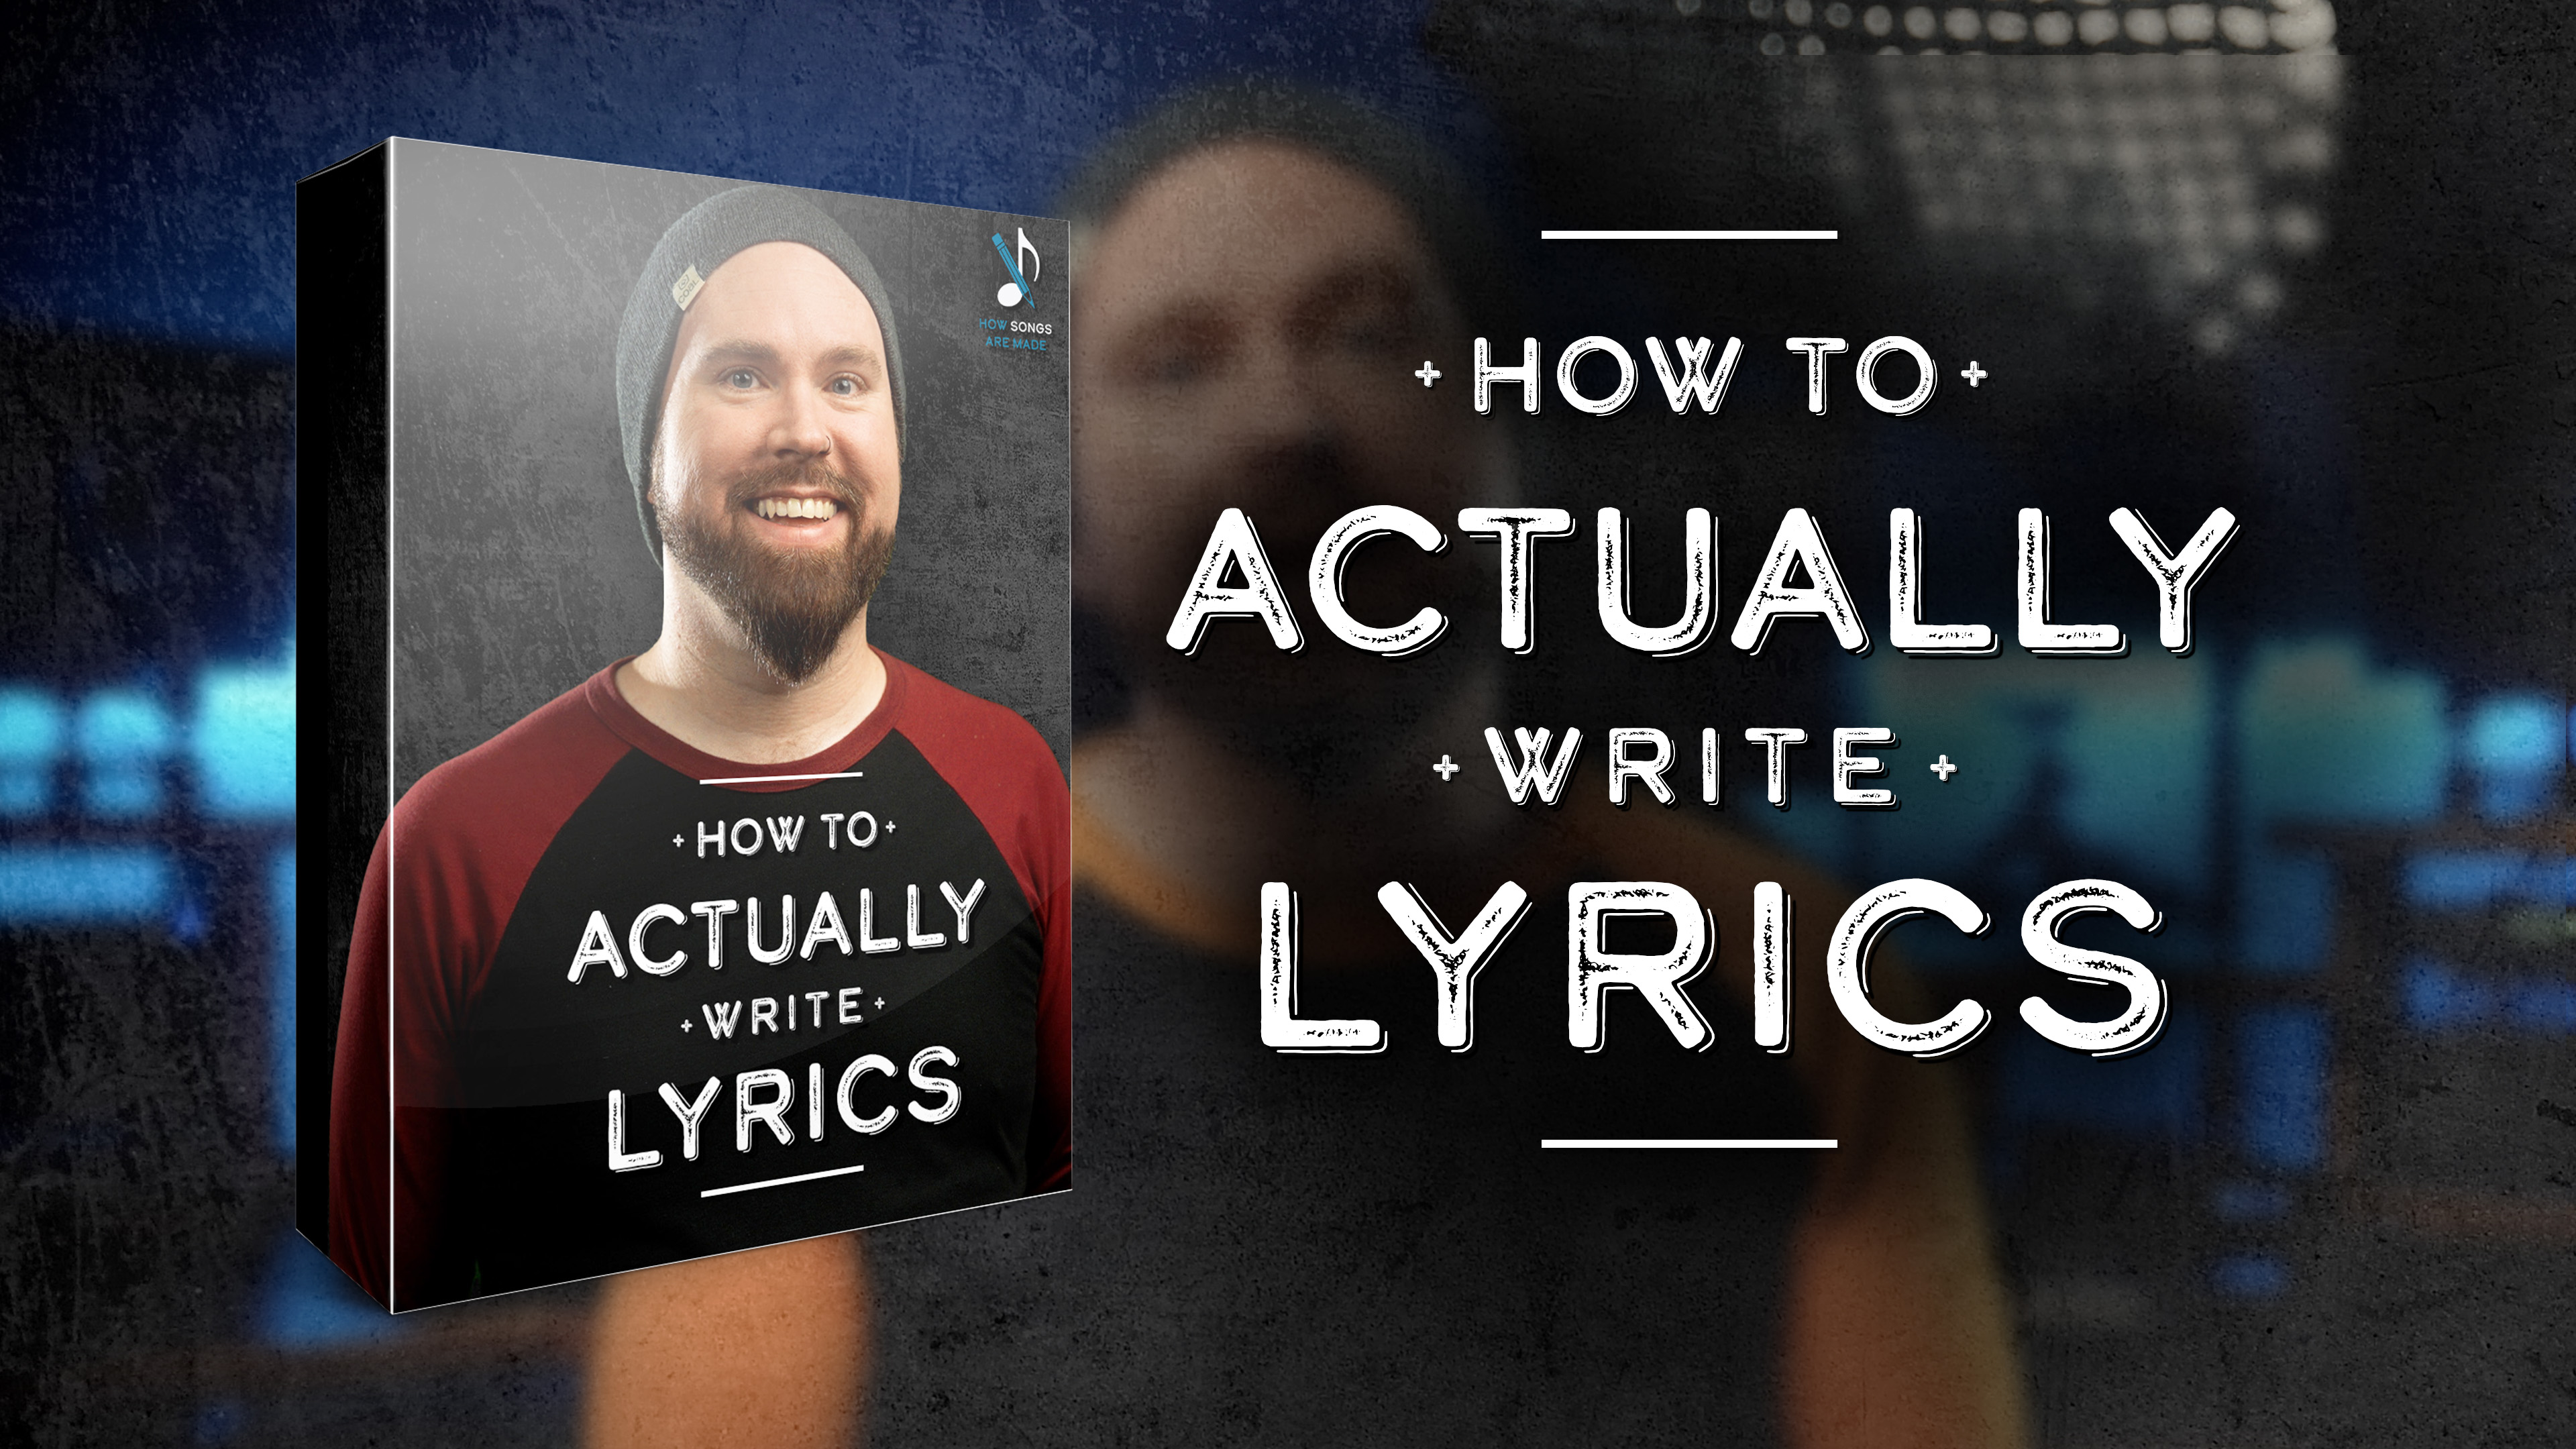 HOW TO ACTUALLY WRITE LYRICS